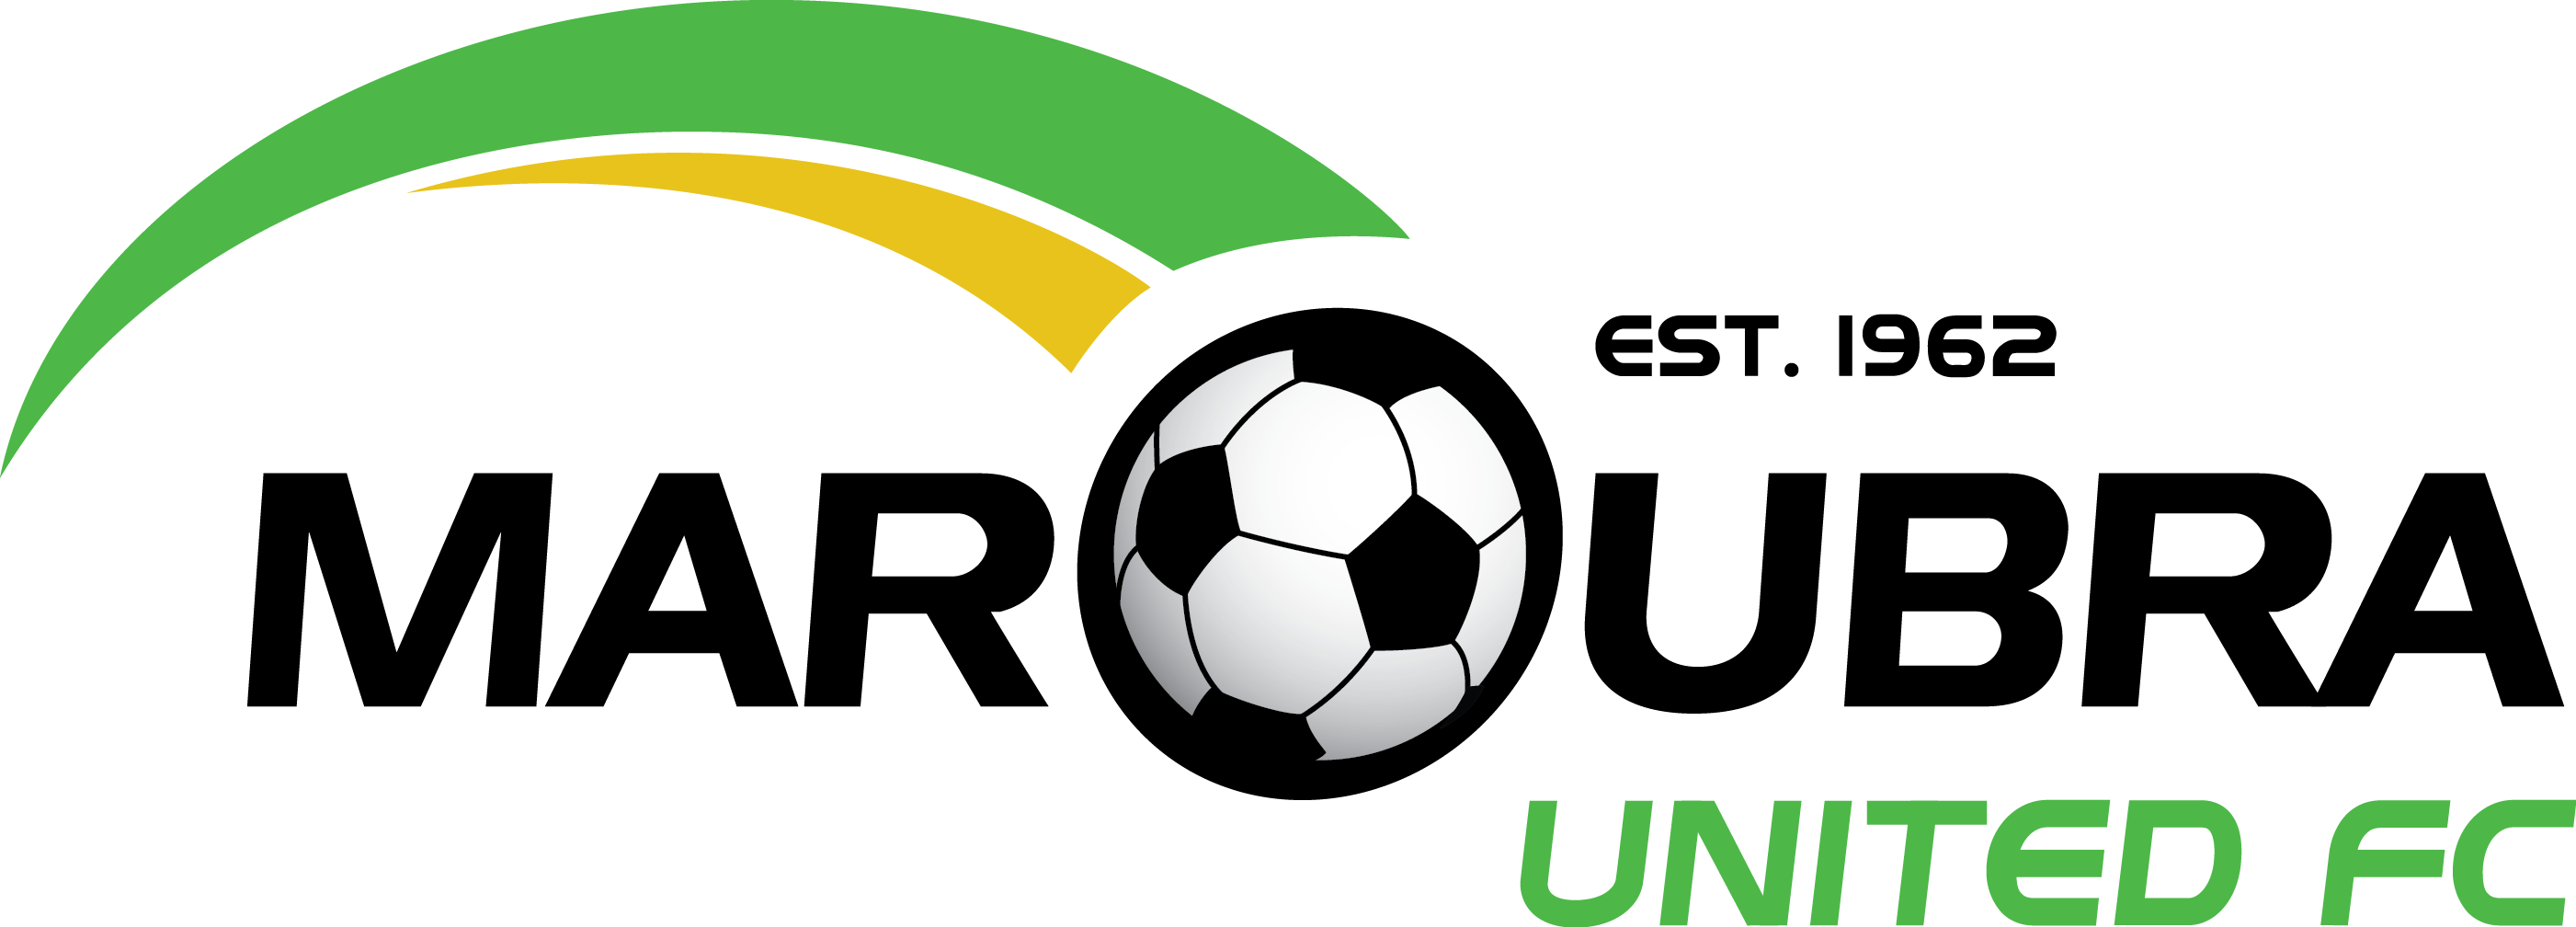 Maroubra United Football Club